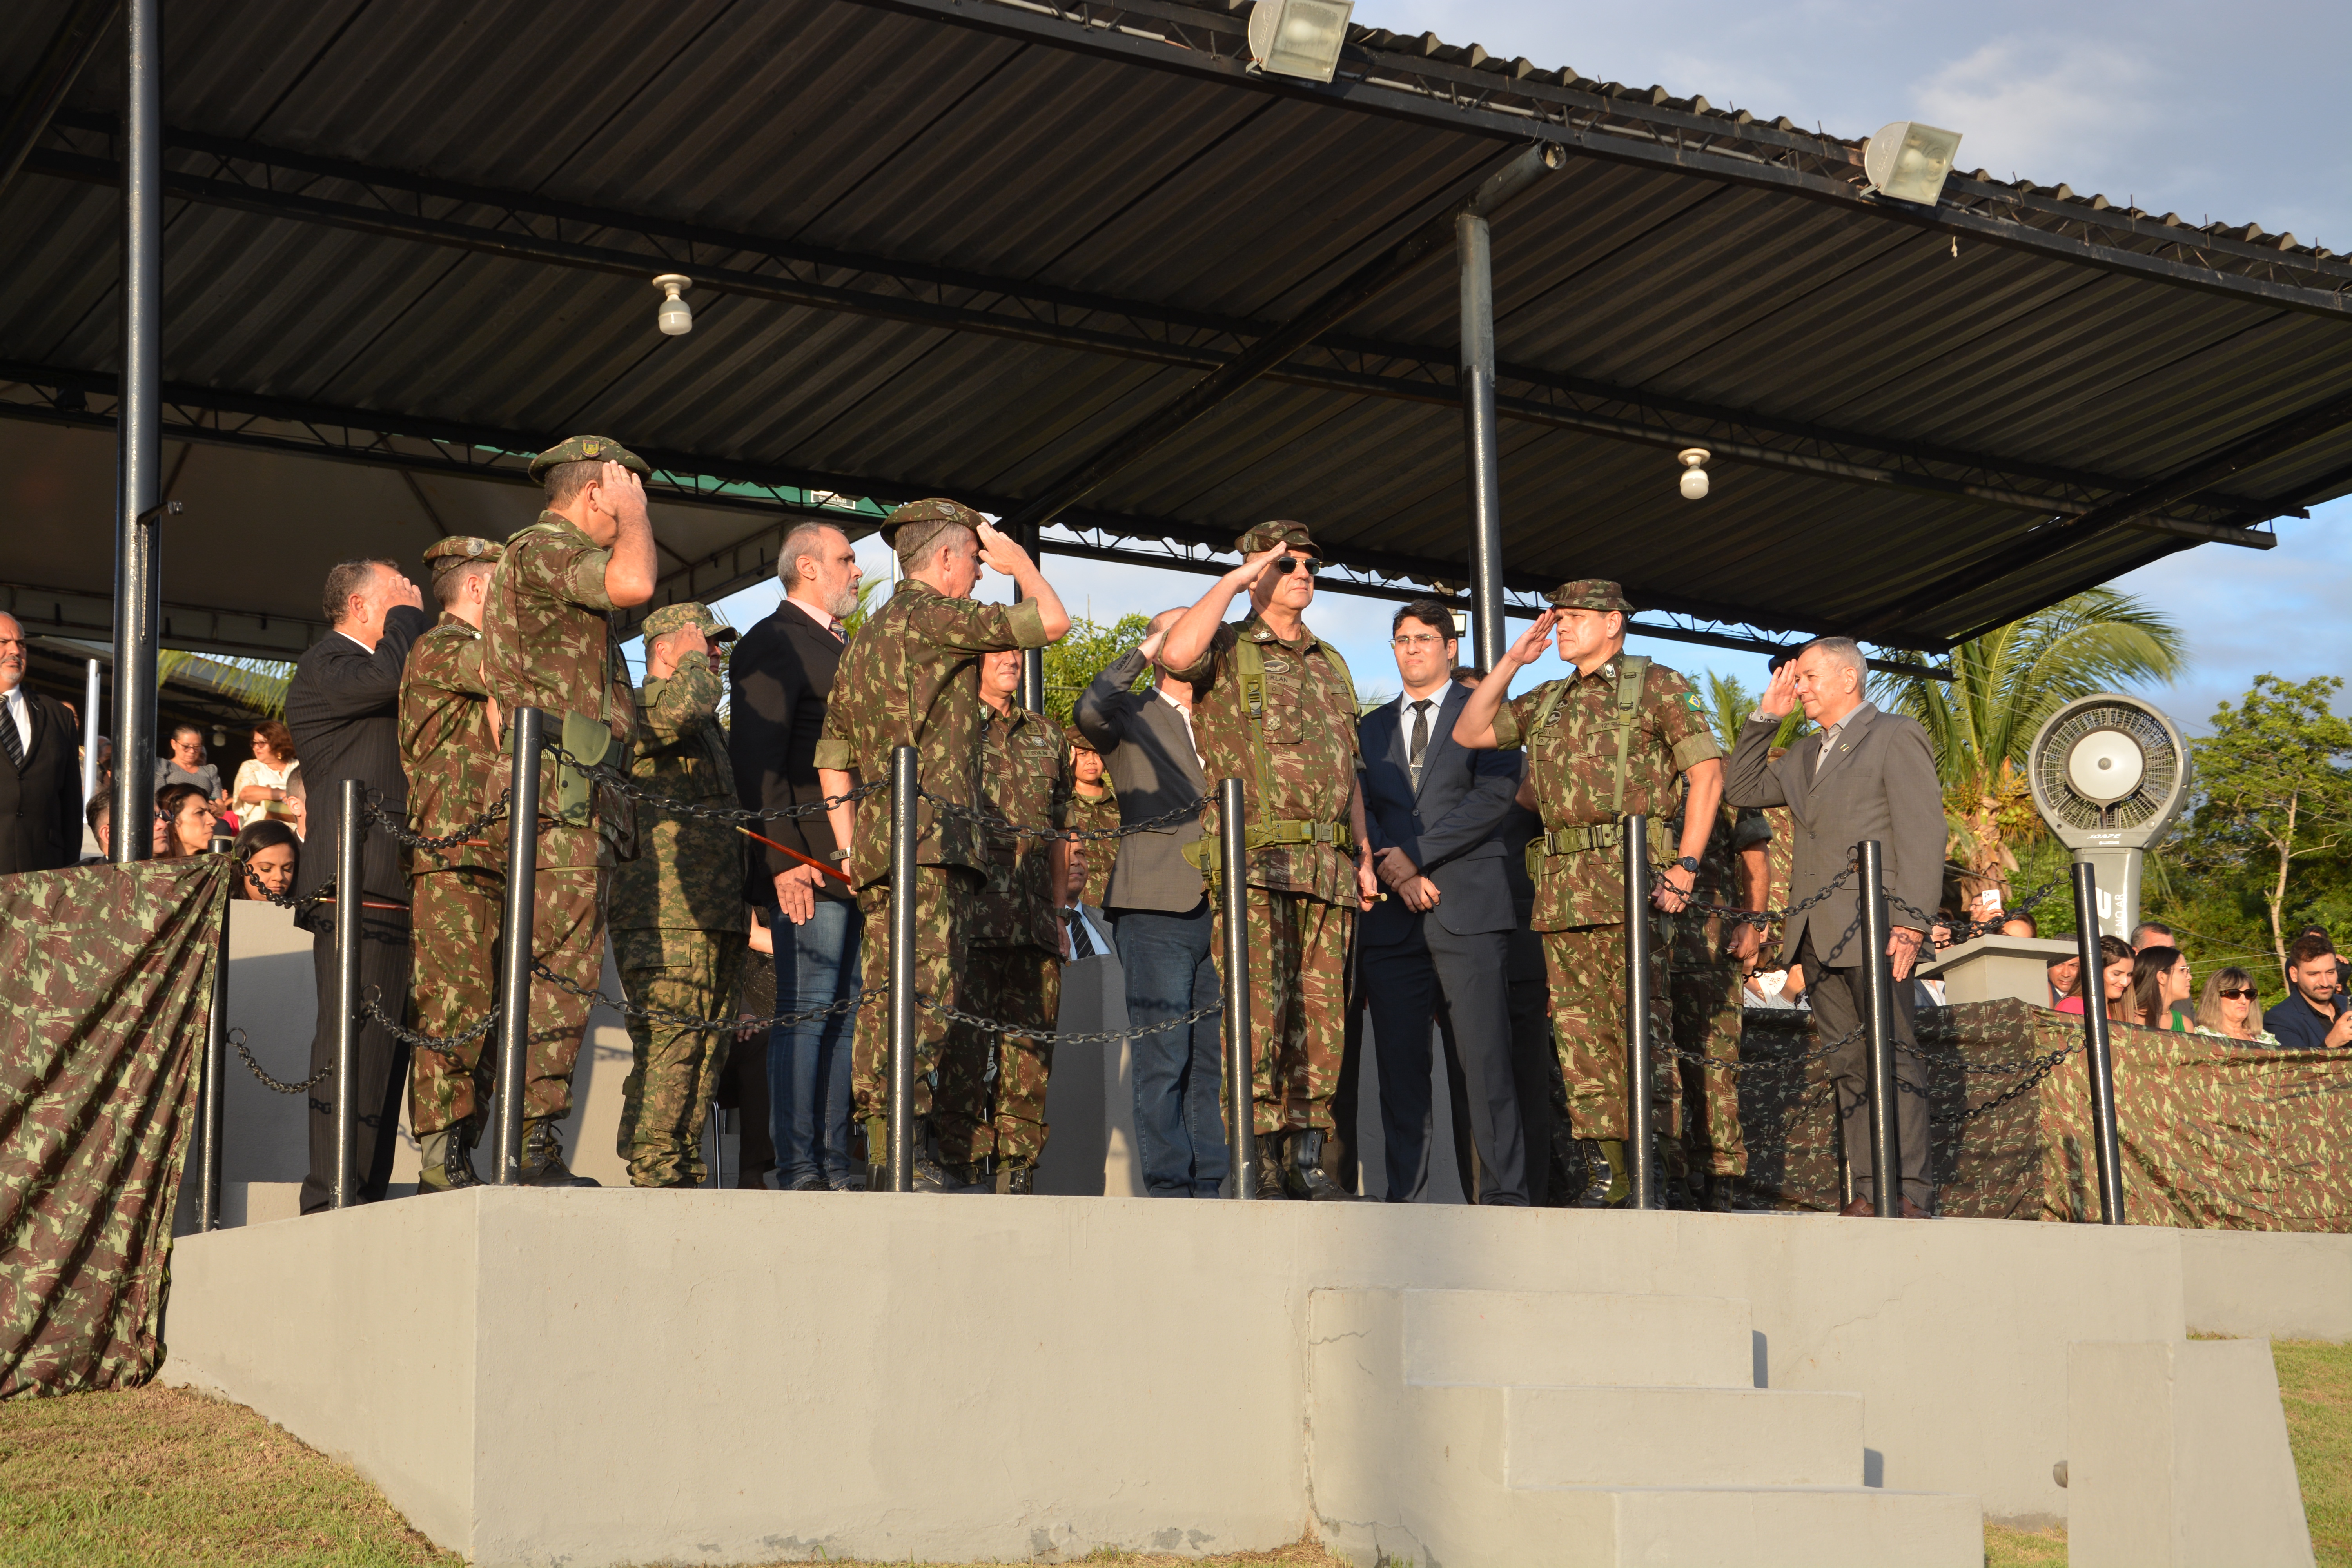 Companhia de Comando da 12ª Região Militar incorpora novo contingente